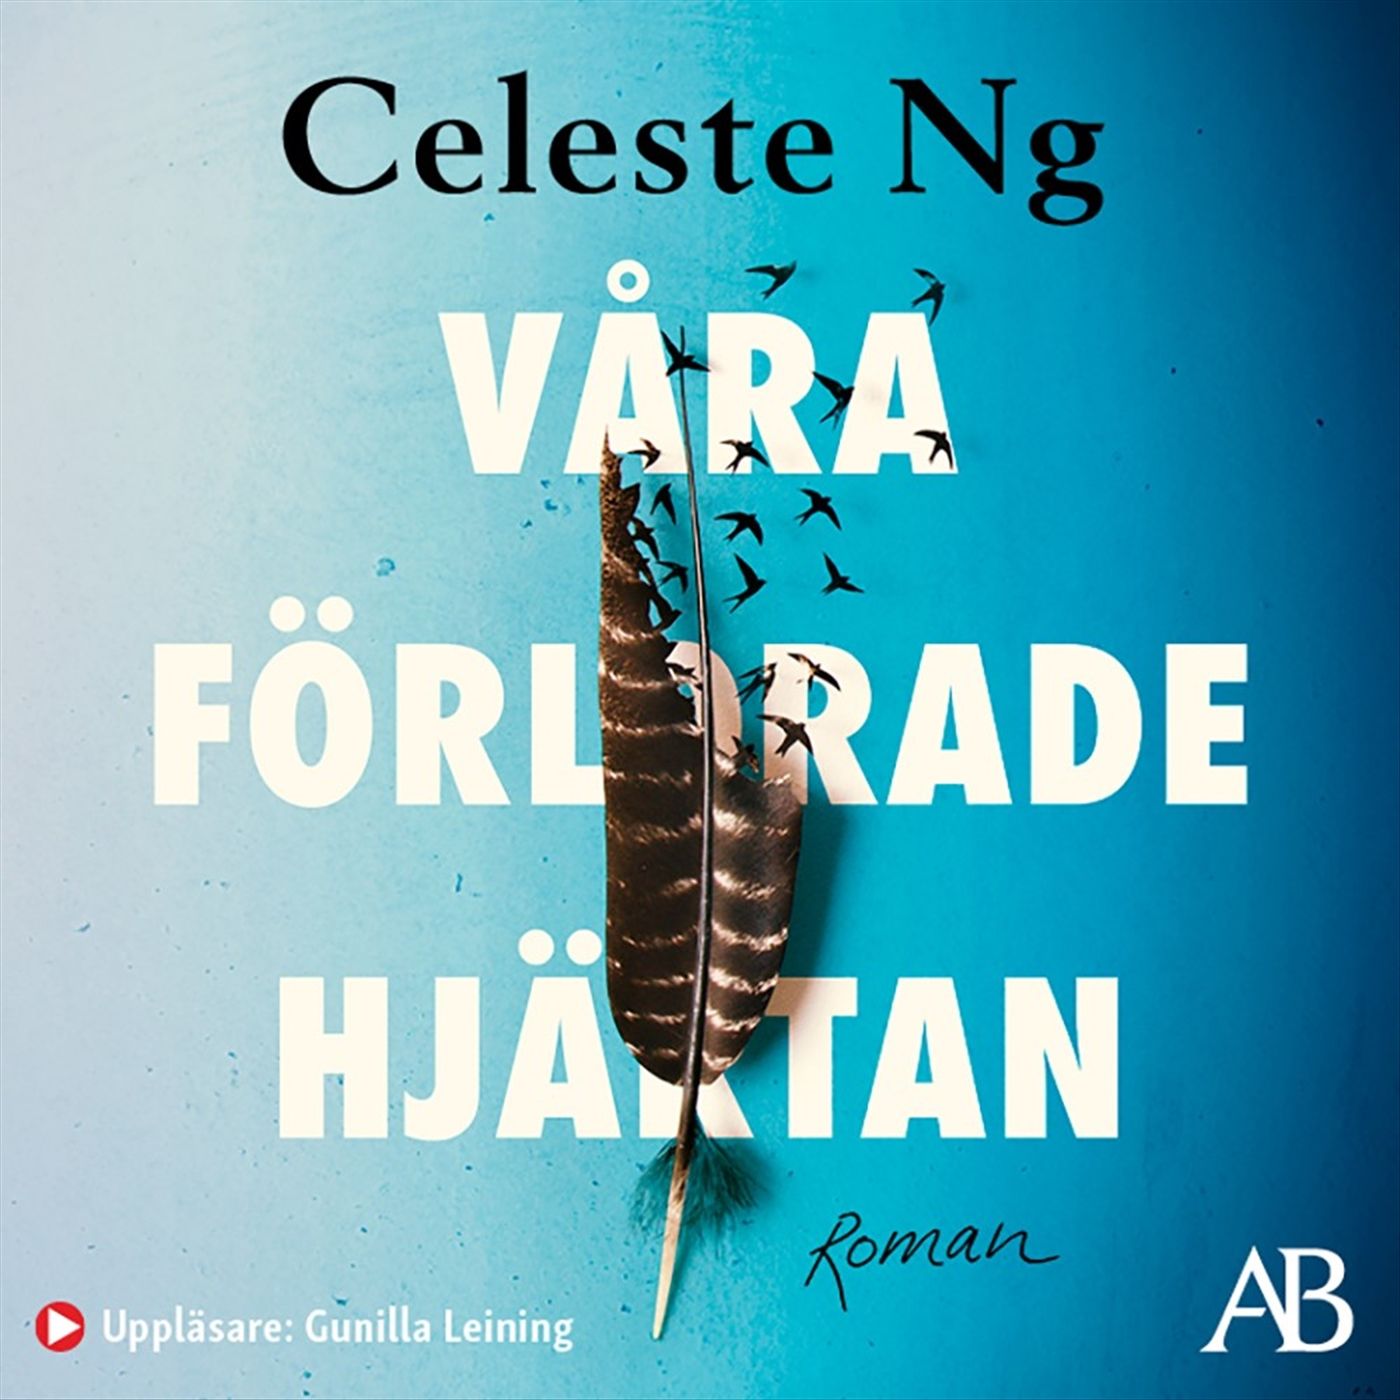 Våra förlorade hjärtan, ljudbok av Celeste Ng